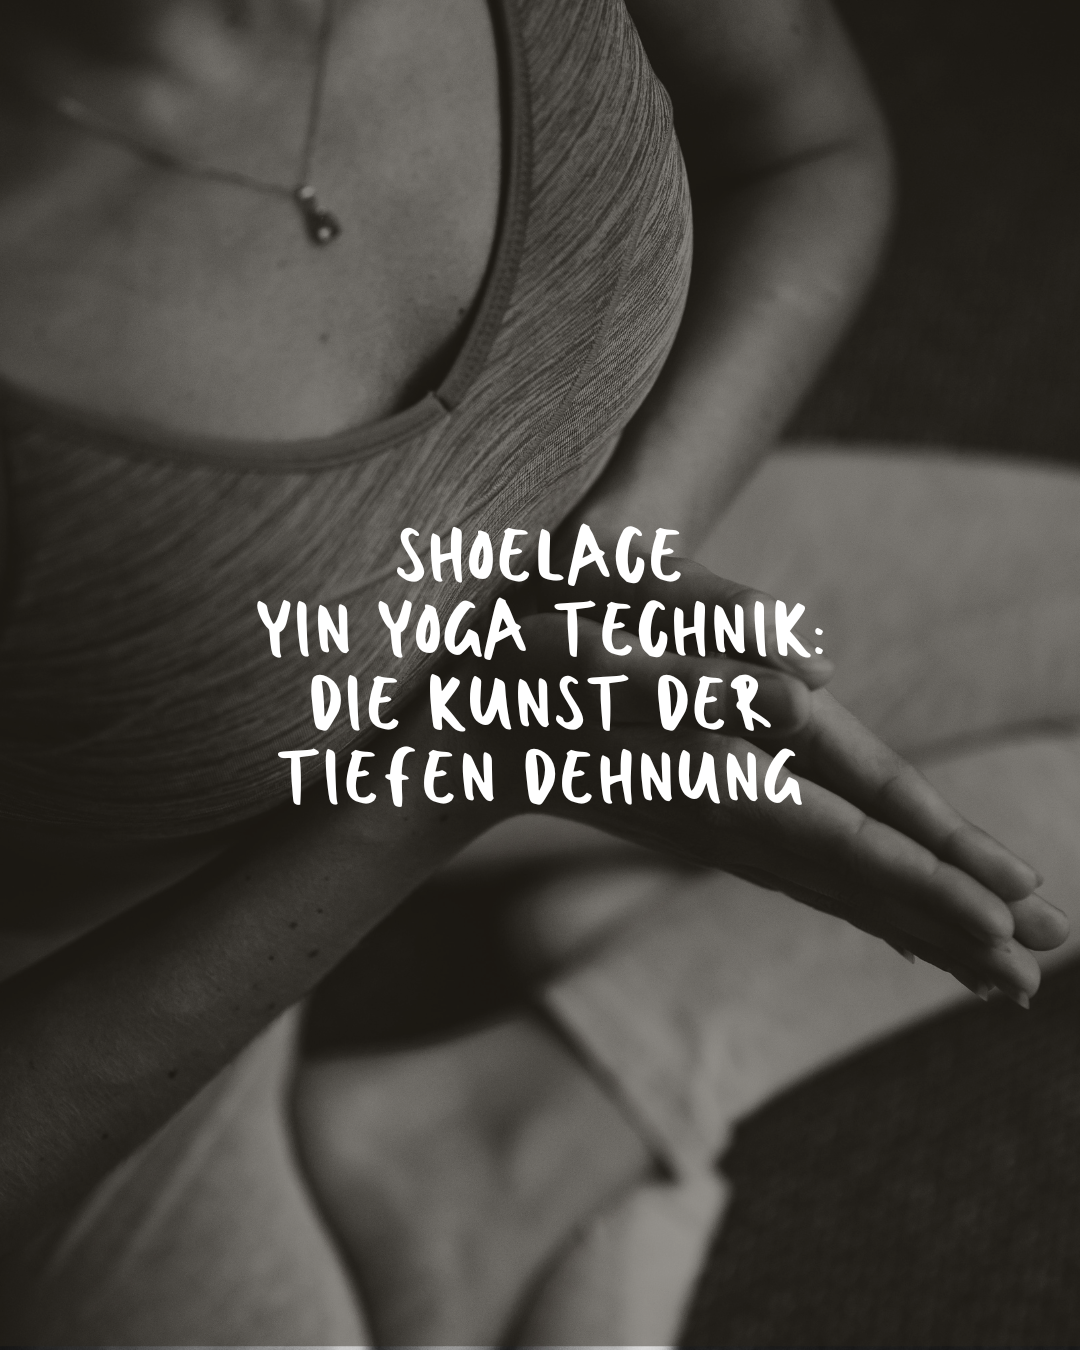 Shoelace Yin Yoga Technik: Die Kunst der tiefen Dehnung